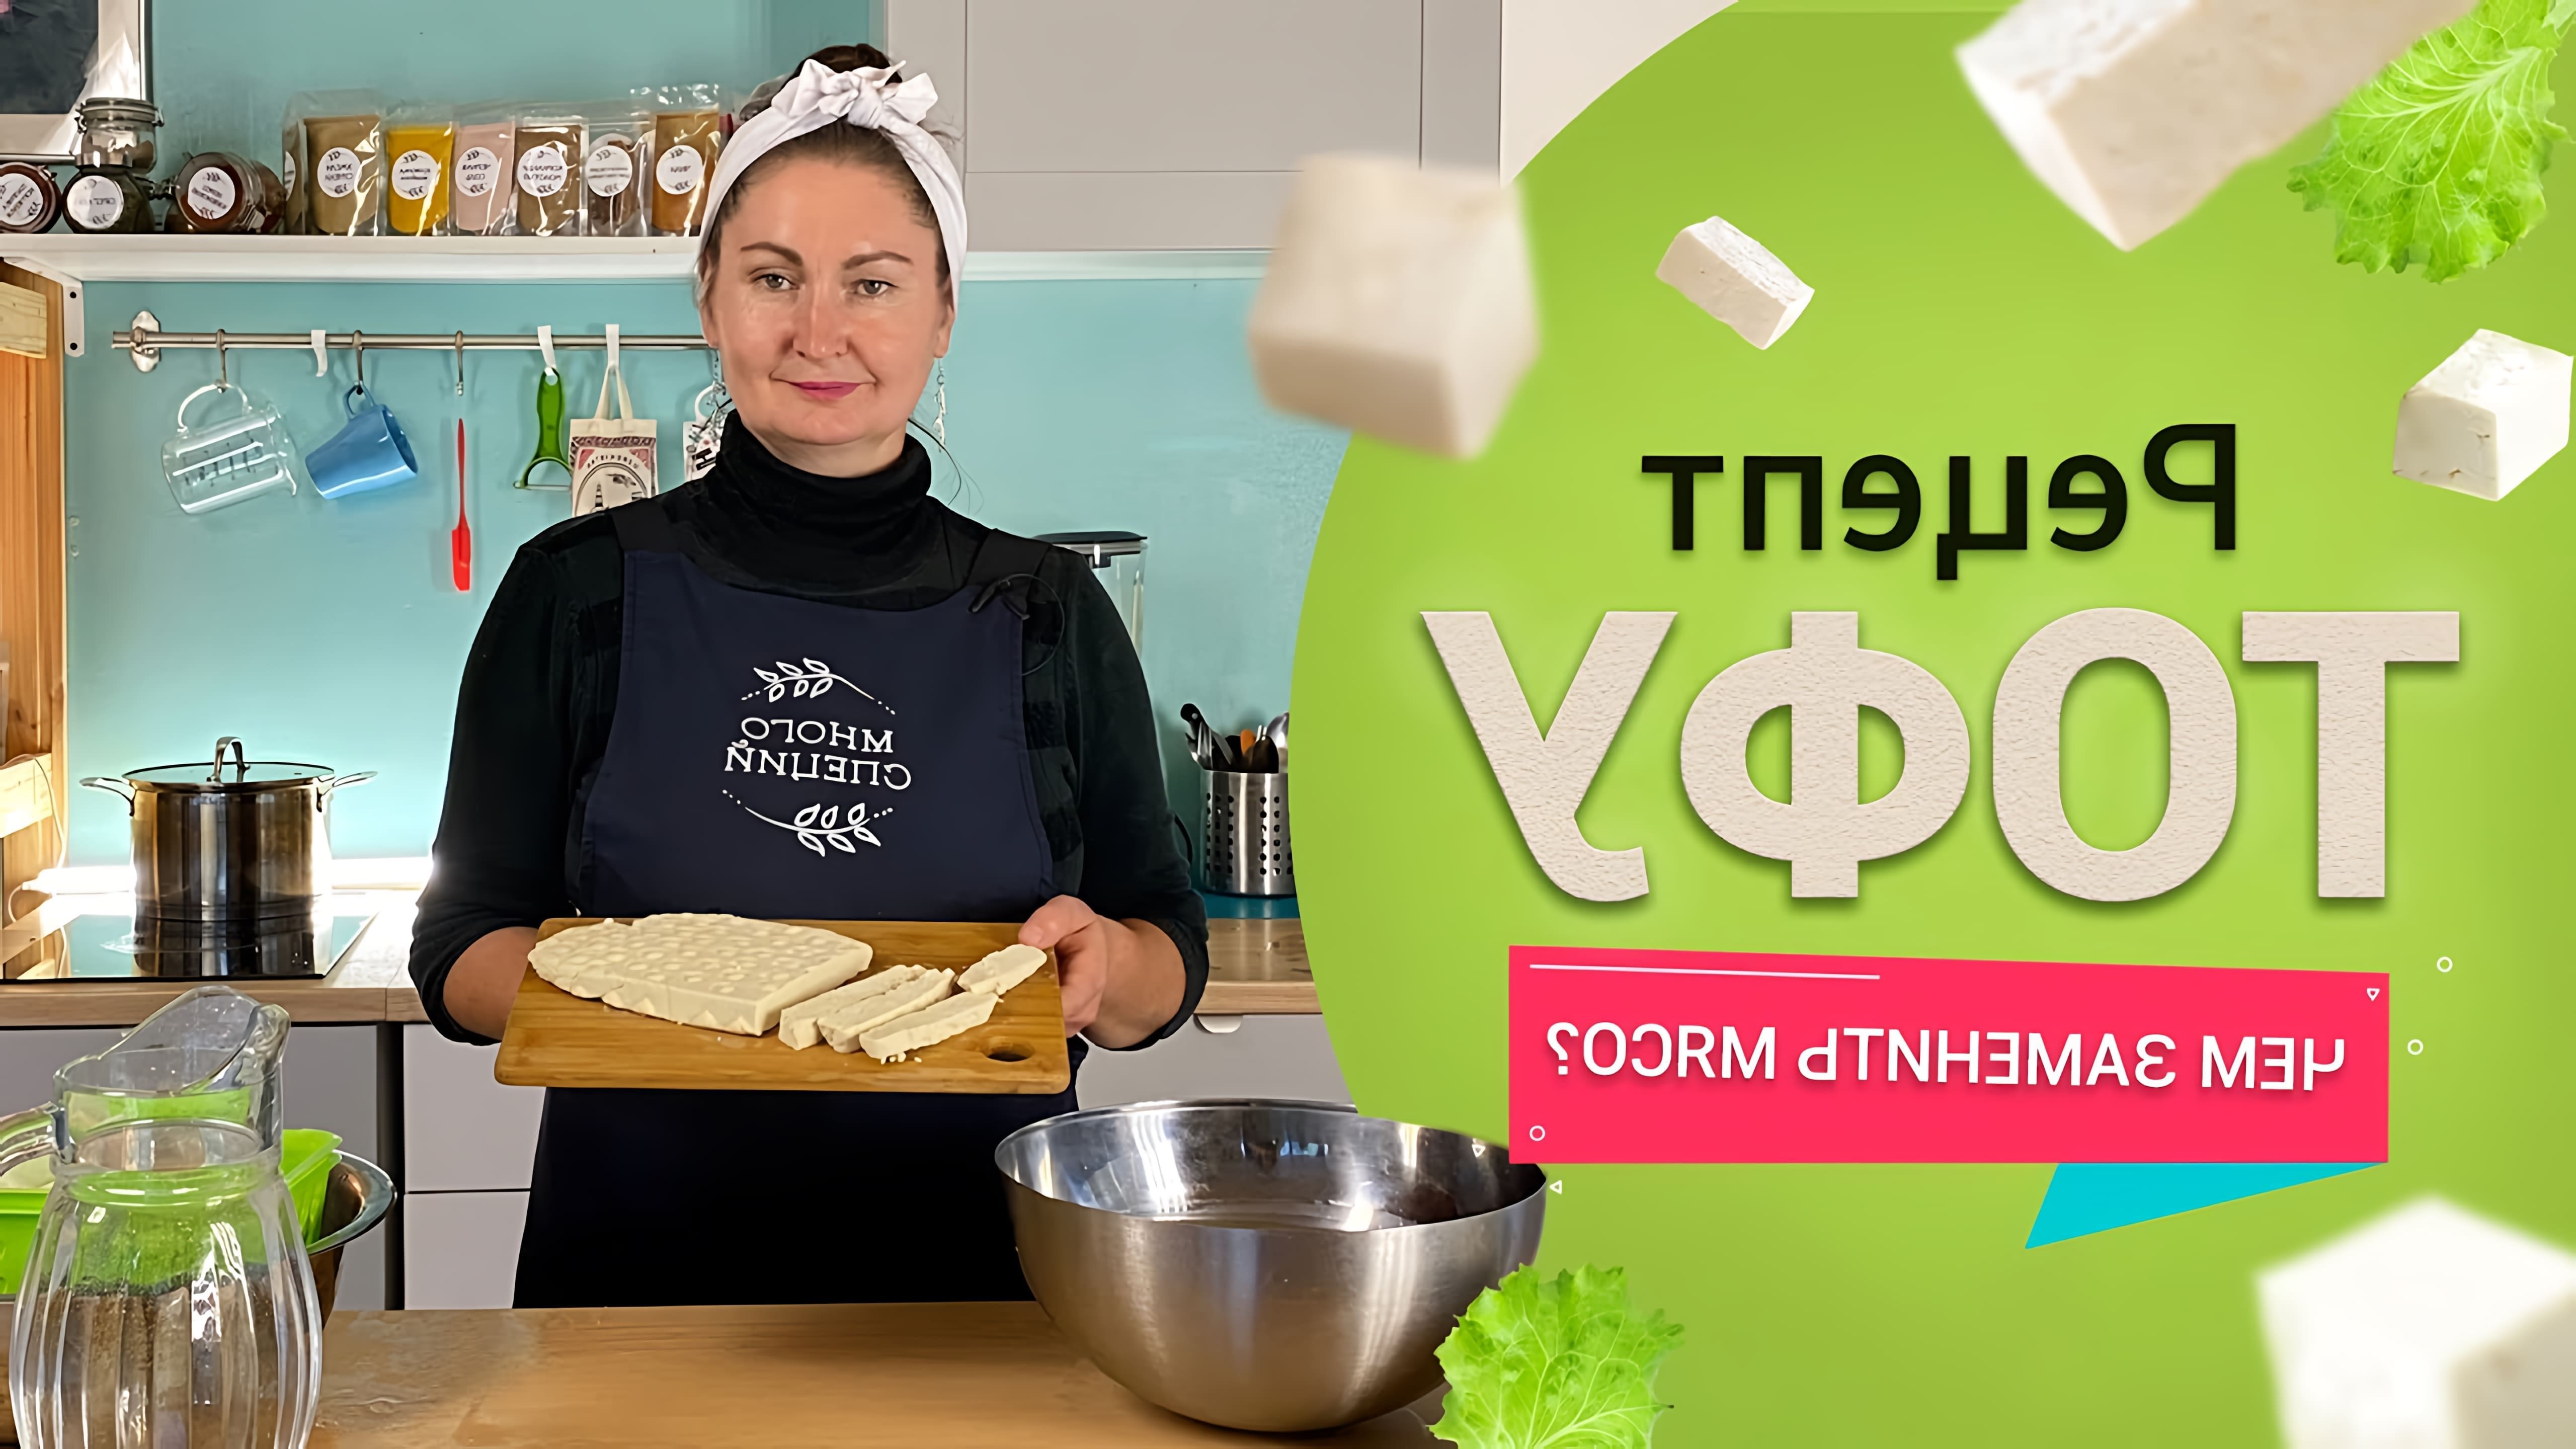 В этом видео рассказывается о приготовлении тофу - веганского сыра без использования молочных продуктов